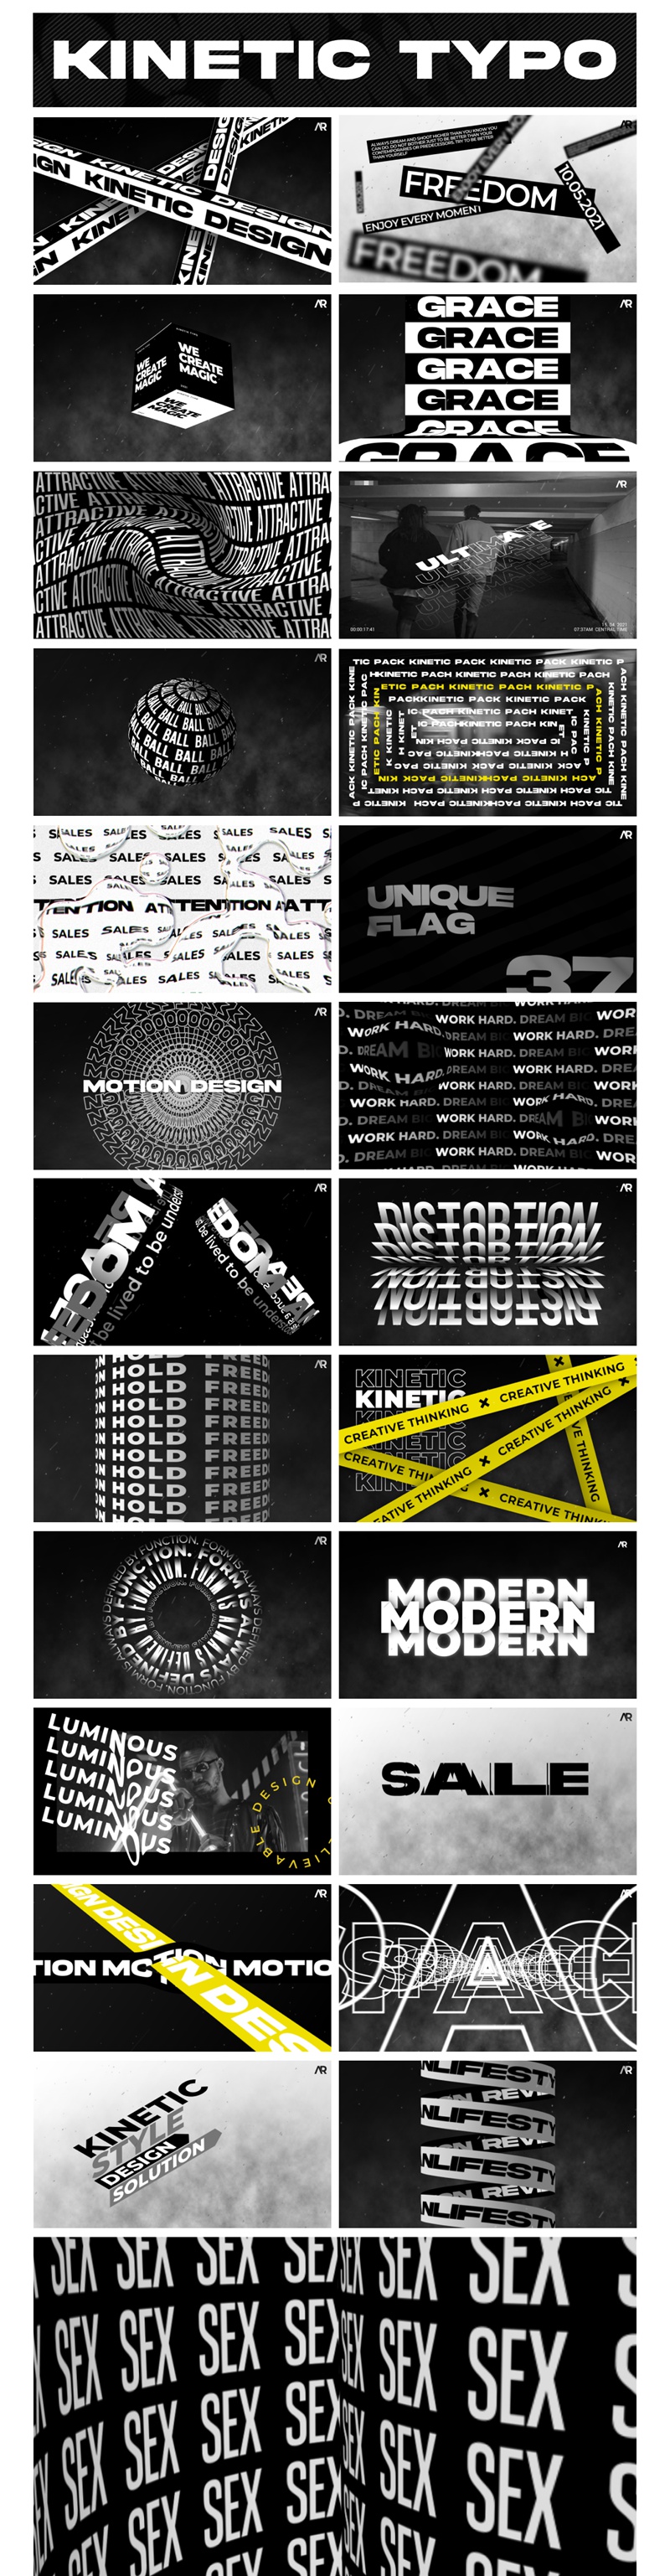 野蛮主义动力学重踏几何黑白大胆错版动态文字标题 Kinetic Typography 设计素材 第2张